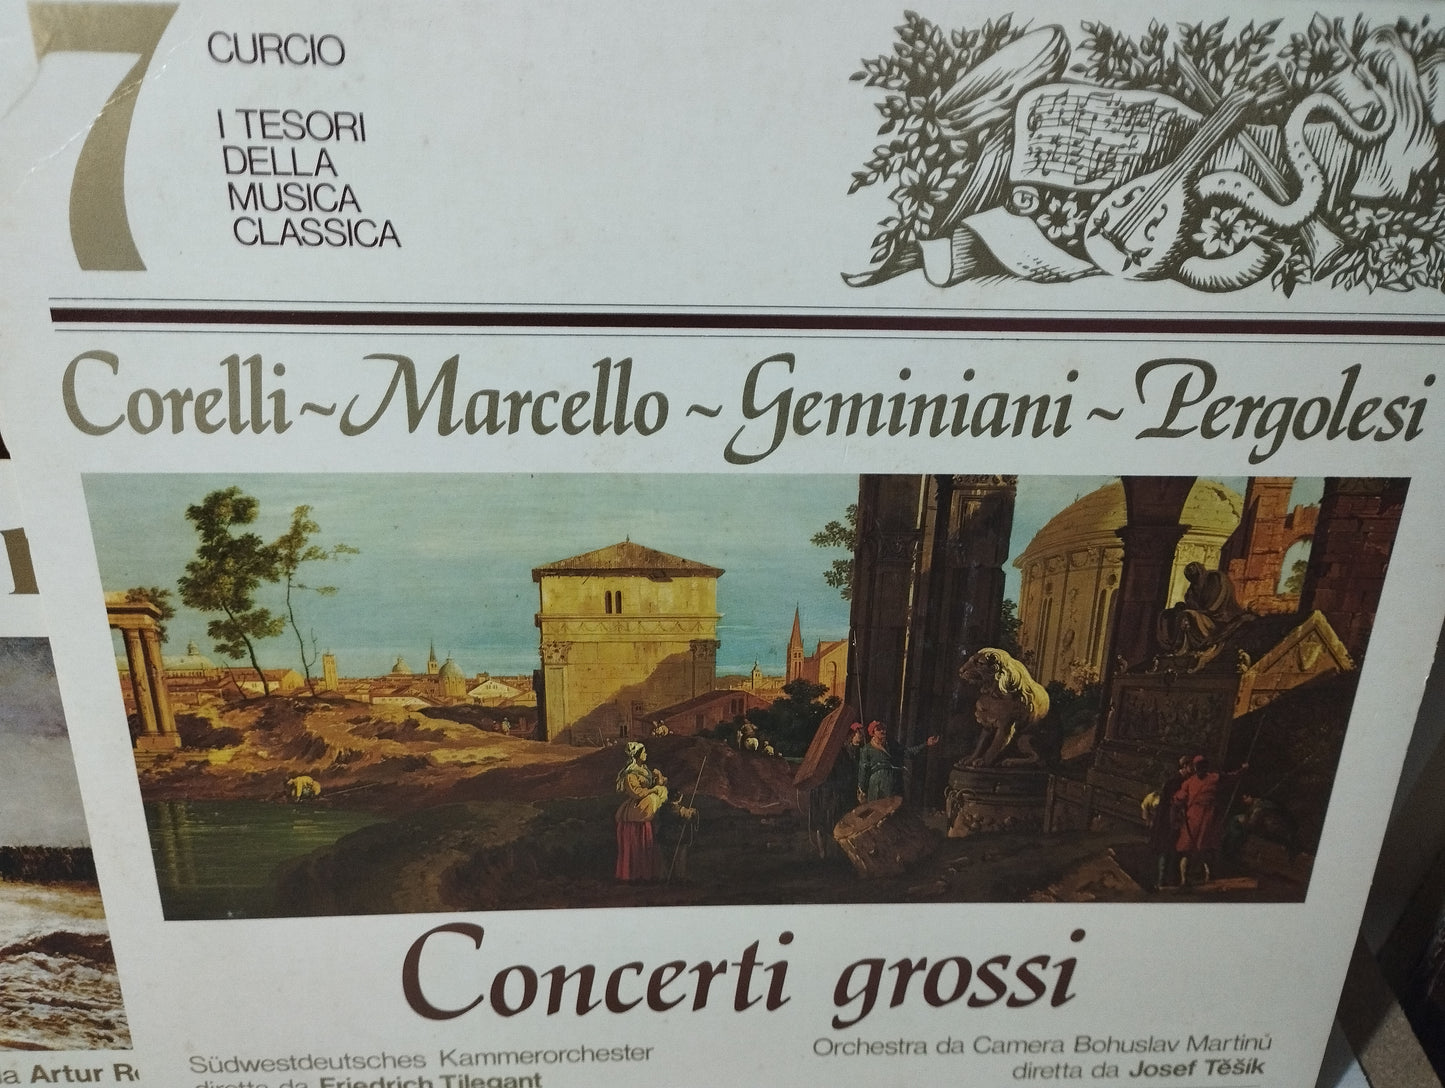 Tesori Della Musica Classica

Lotto 12 Lp 33 Giri

Editi fa Curcio Editore

Anni 70/80